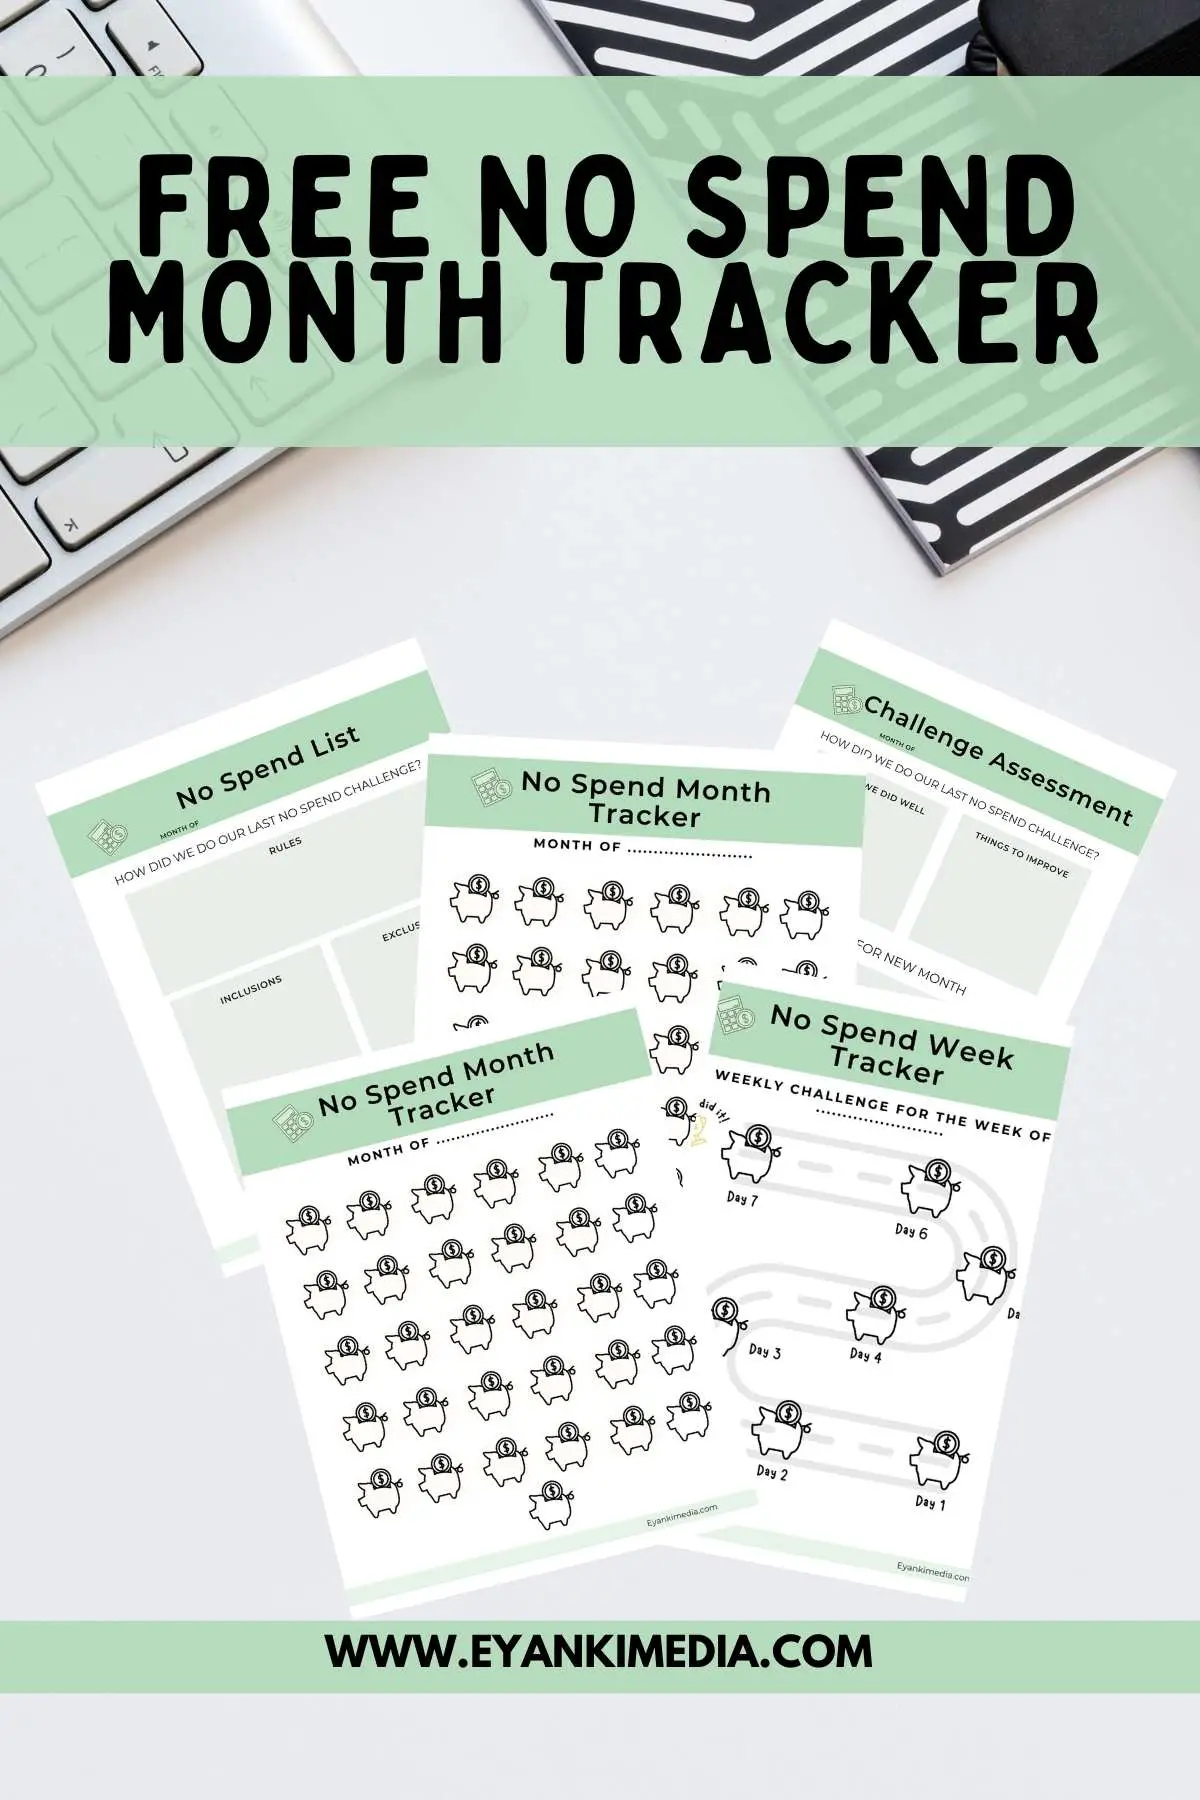 No spend month tracker